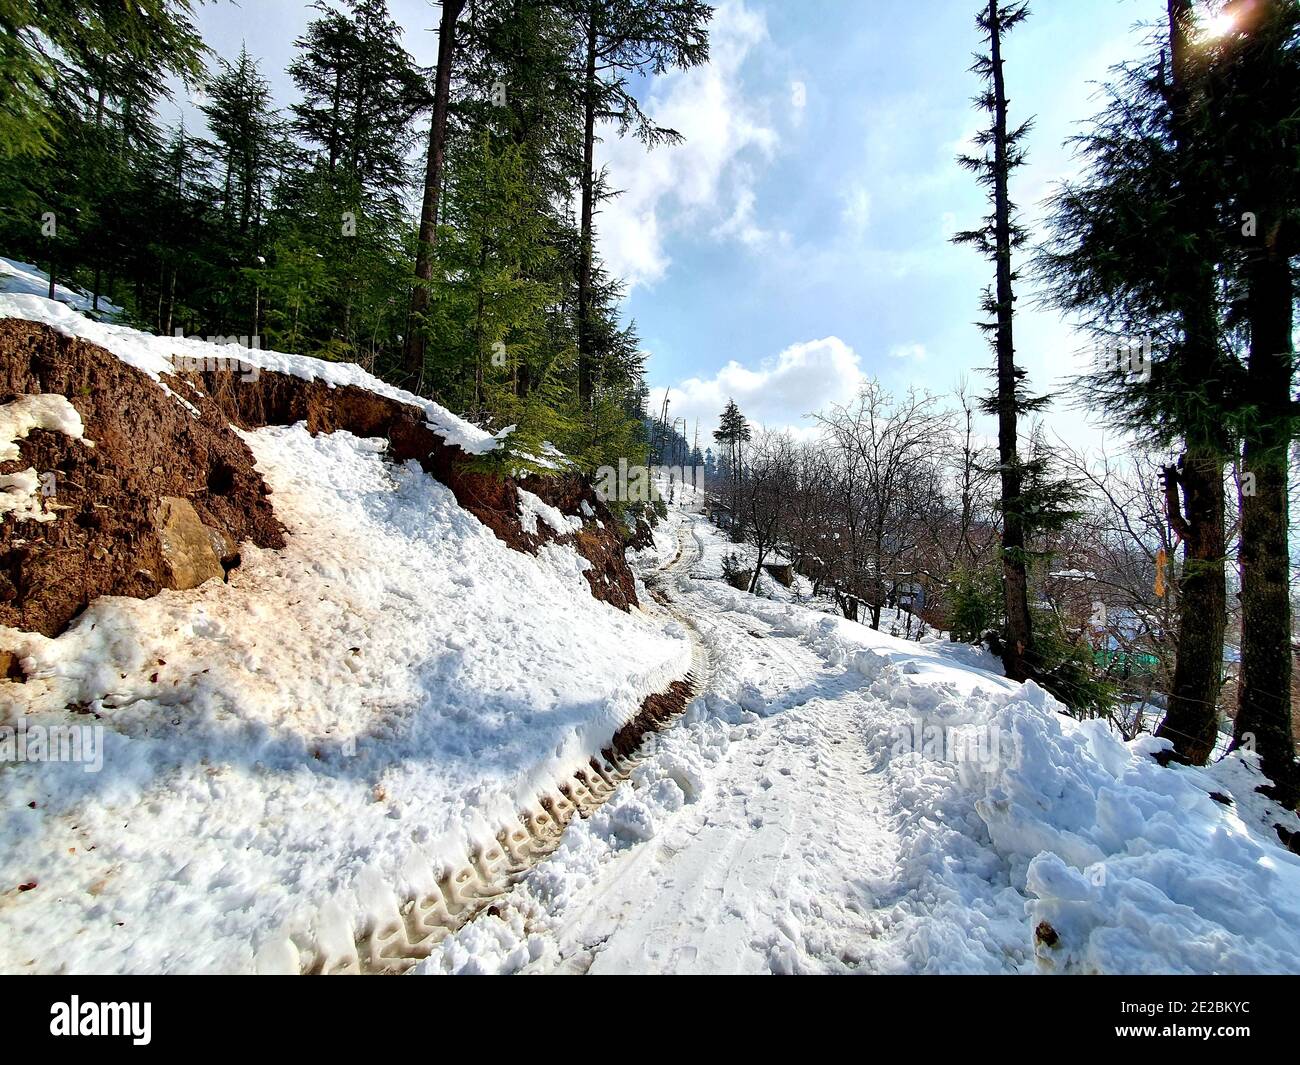 La chute de neige au Jammu-et-Cachemire est courante de décembre à février, la neige attire les touristes et les jeux d'hiver sont également joués sur la neige. Banque D'Images